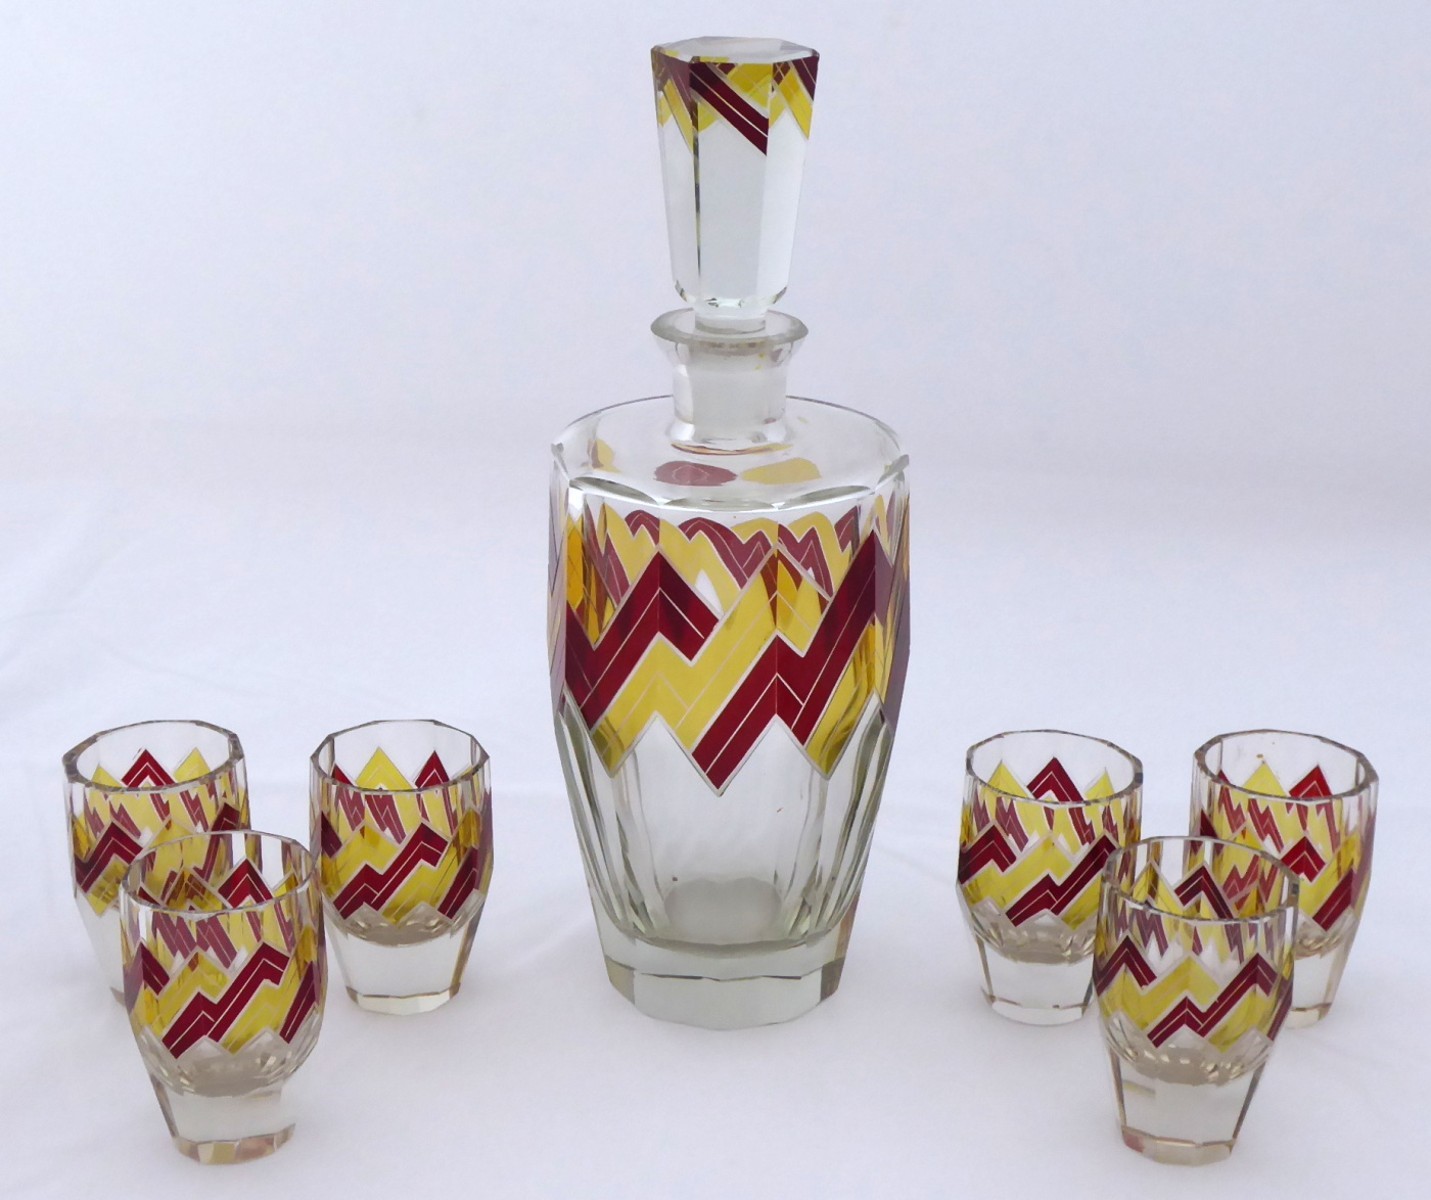 Karafa a šest pohárků, Art deco - Karel Palda, Haida